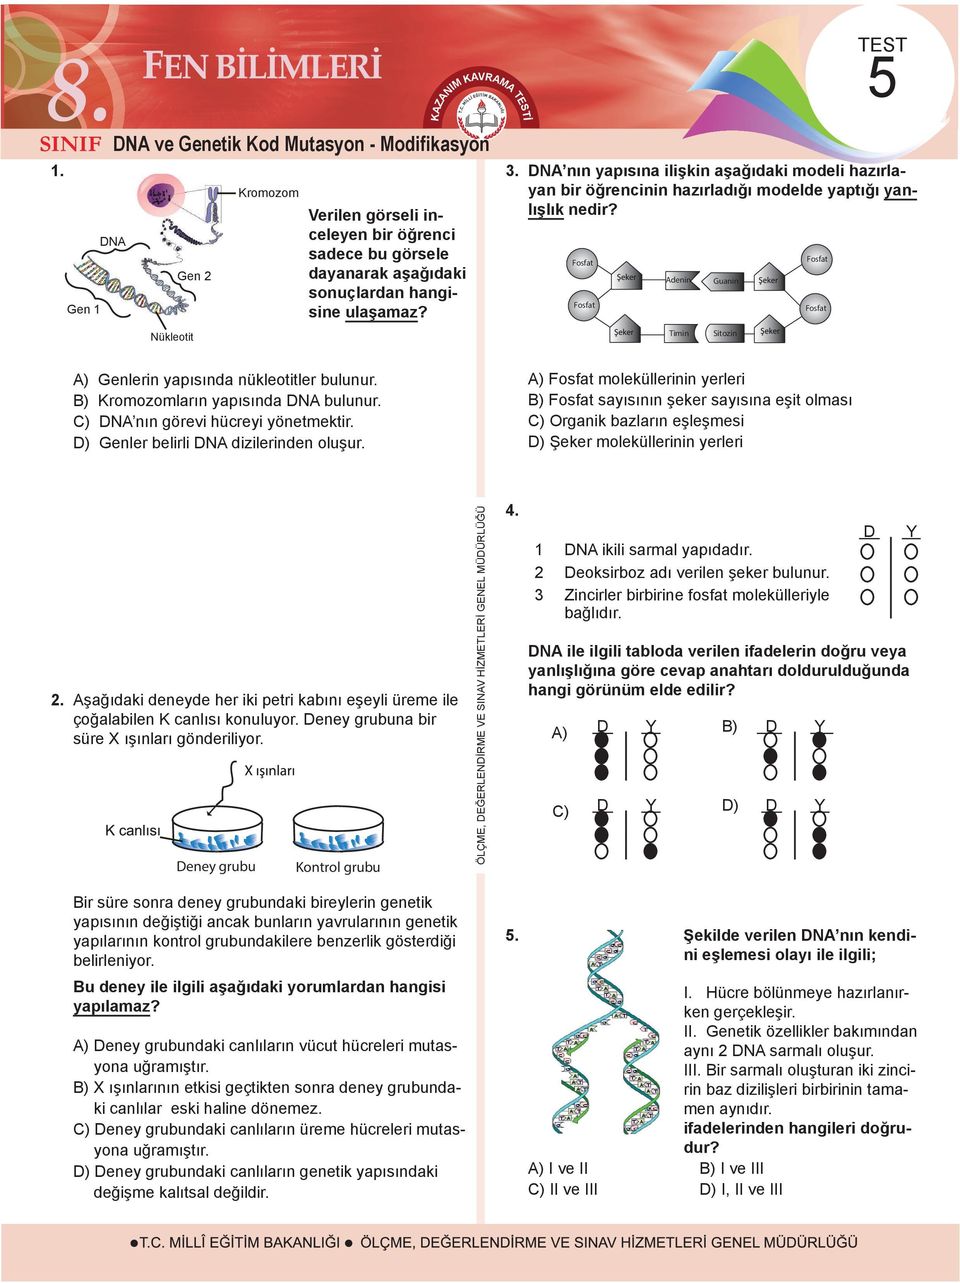 Fosfat Fosfat Adenin Timin Guanin Sitozin Fosfat Fosfat A) Genlerin yapısında nükleotitler bulunur. B) romozomların yapısında DNA bulunur. C) DNA nın görevi hücreyi yönetmektir.